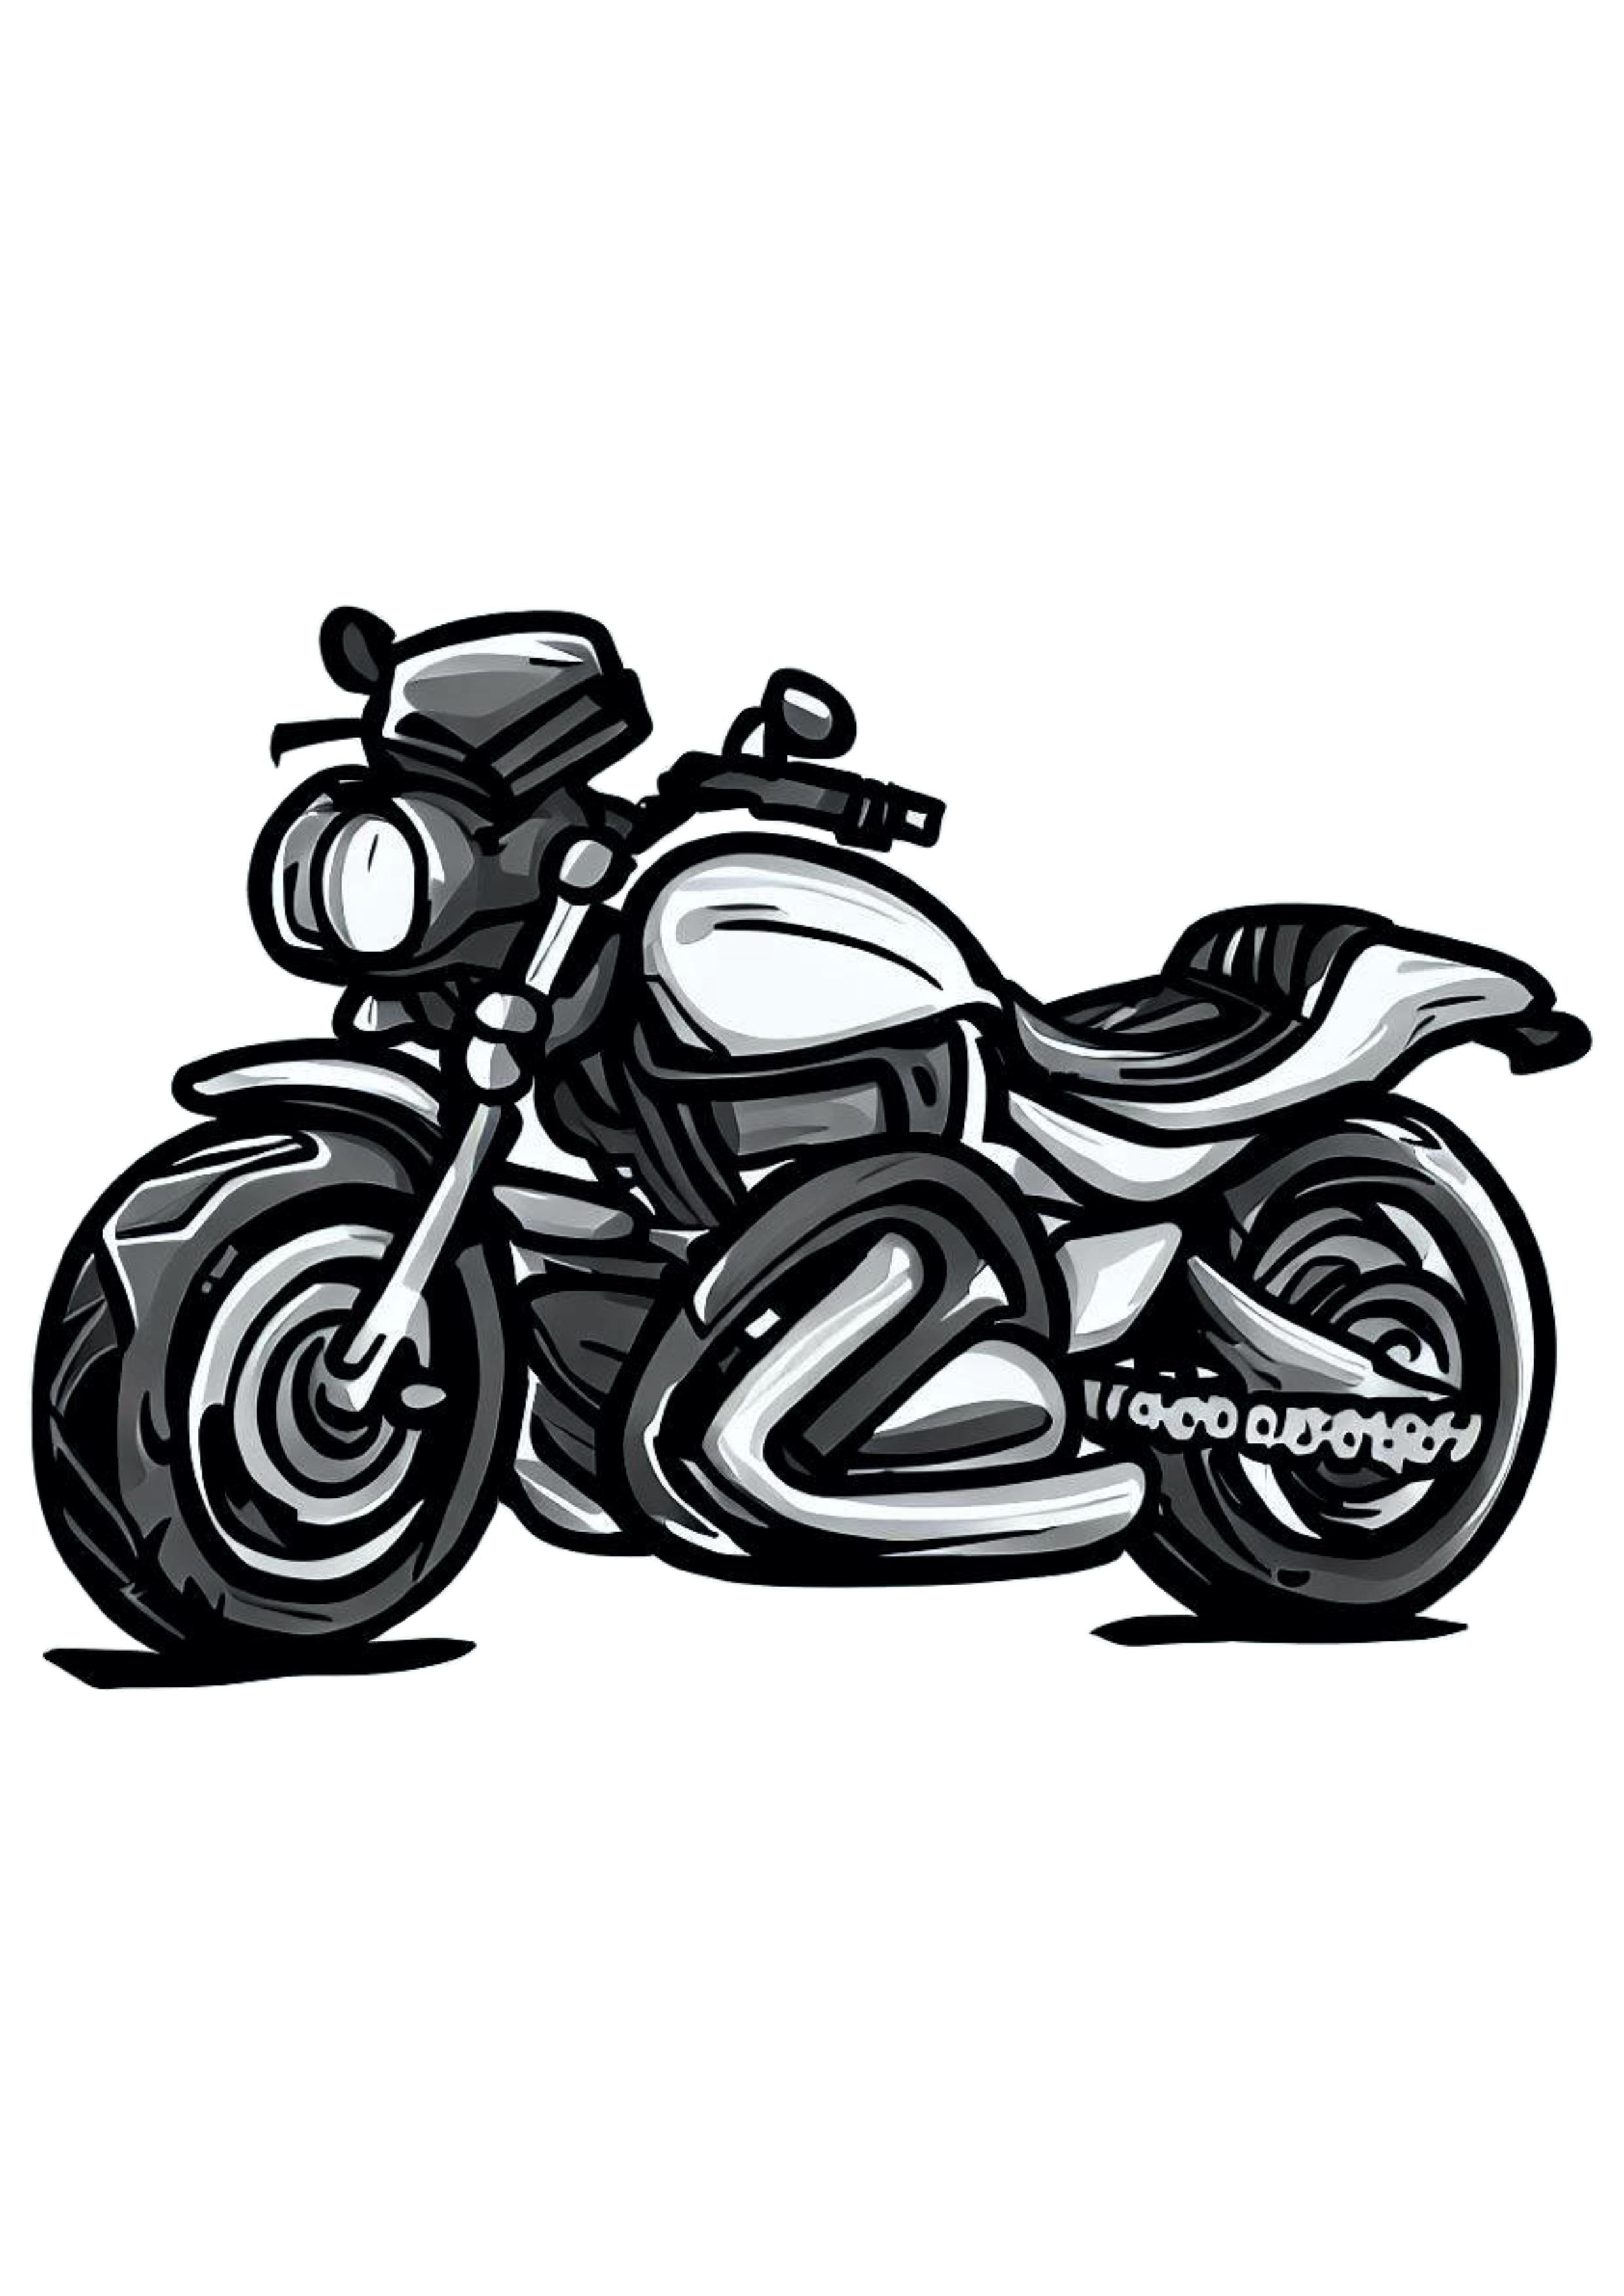 Moto esportiva desenho cartoon imagem conceitual veículo